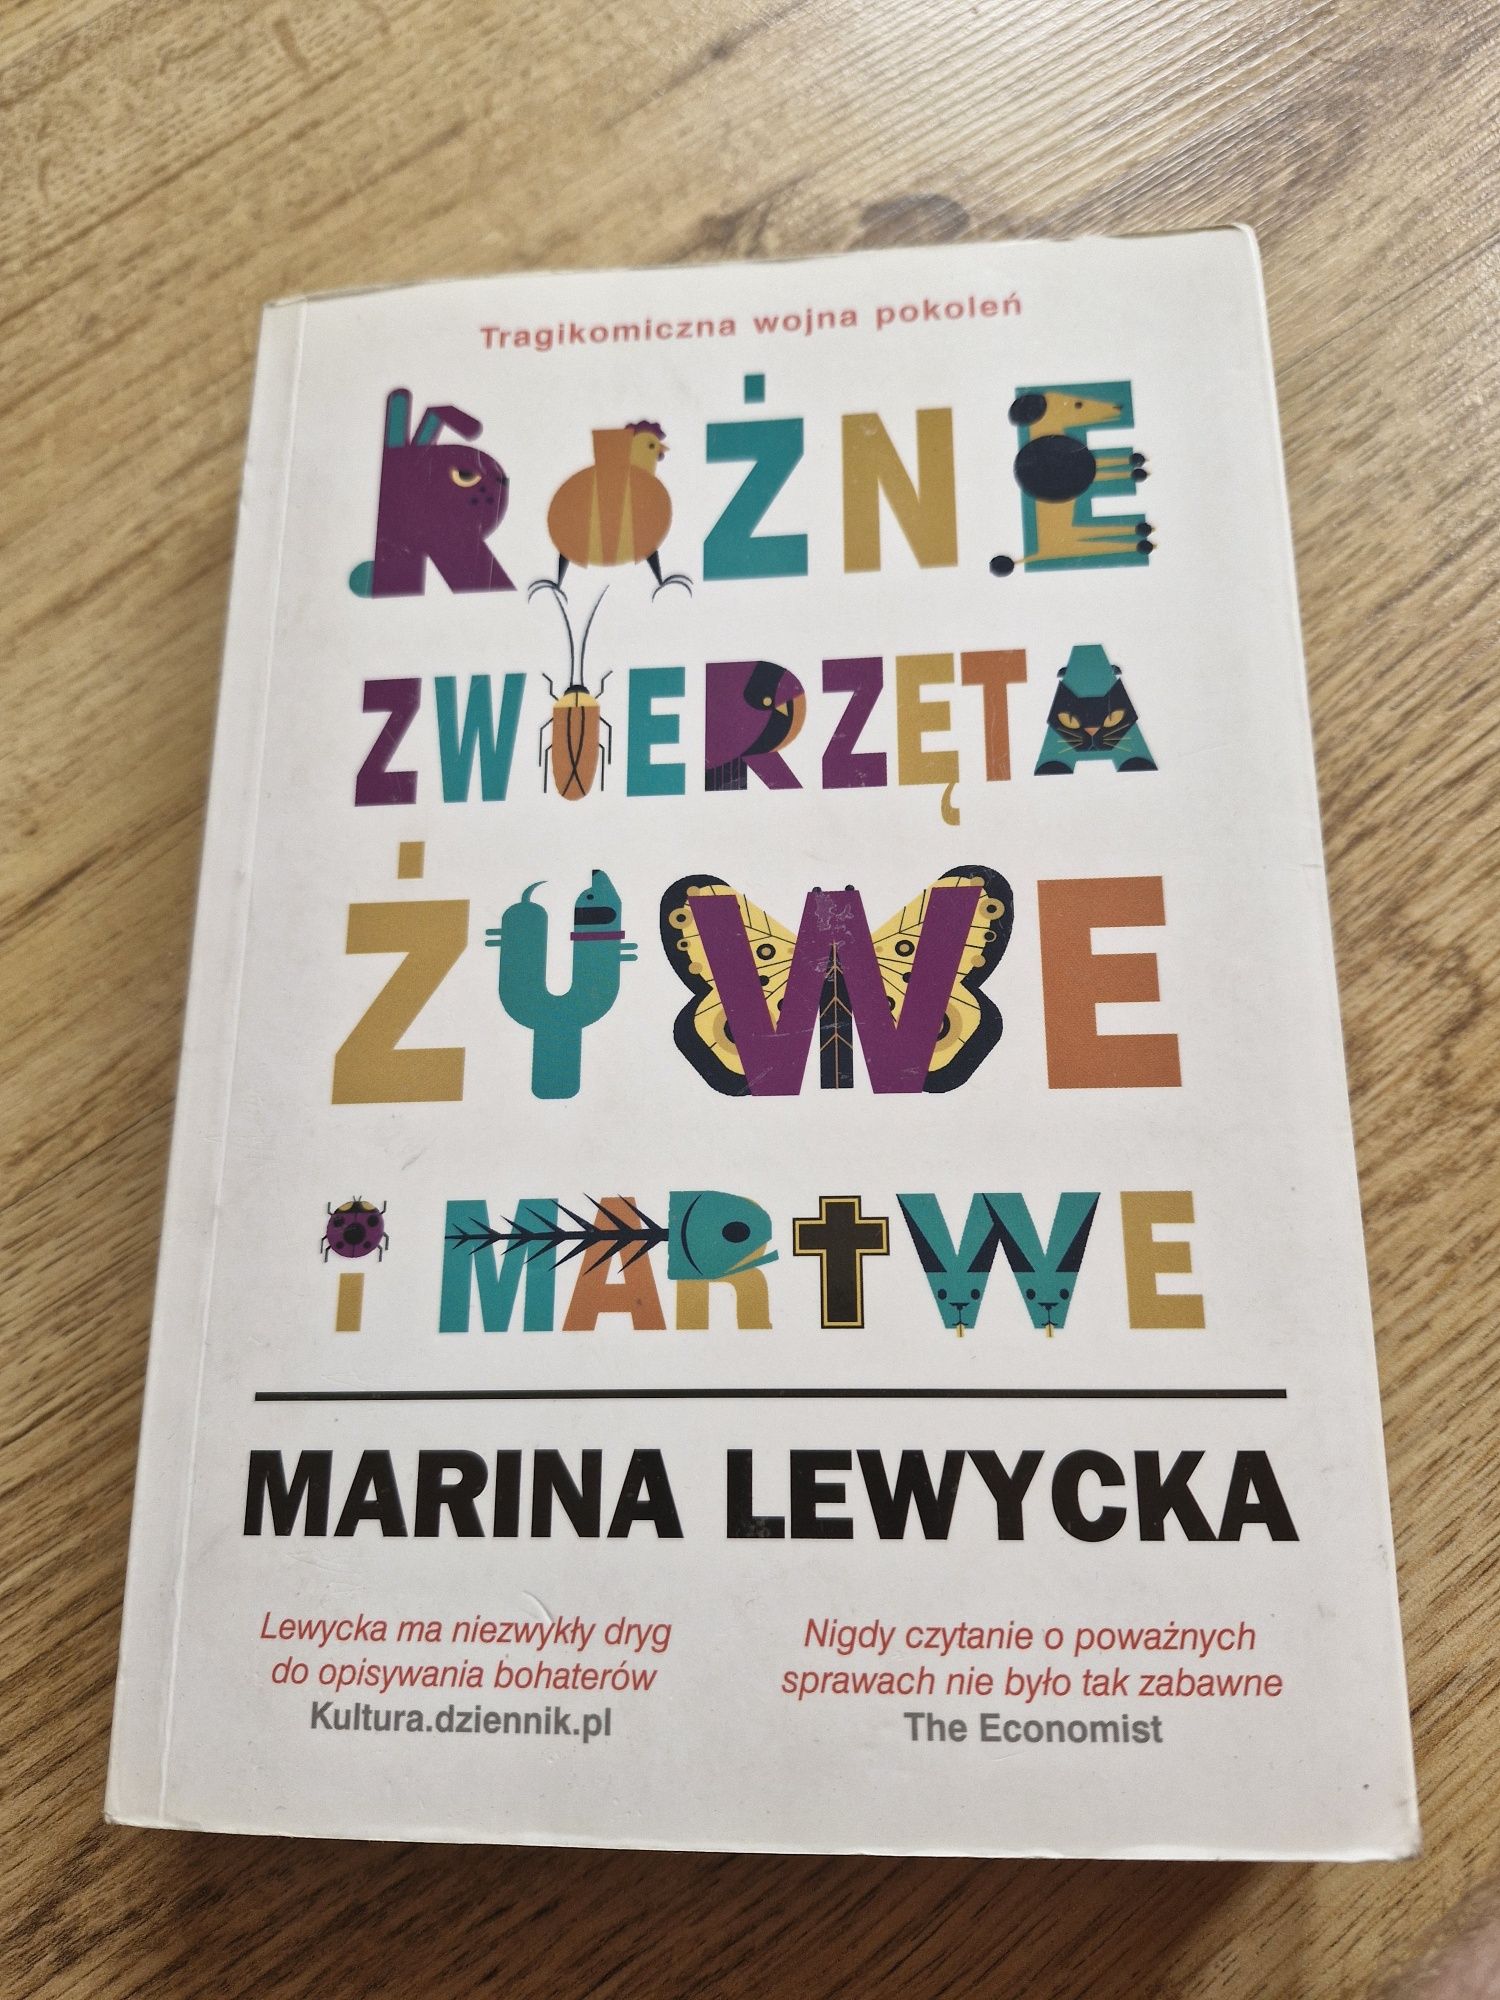 Książka "Różne zwierzęta żywe i martwe" Marina Lewycka